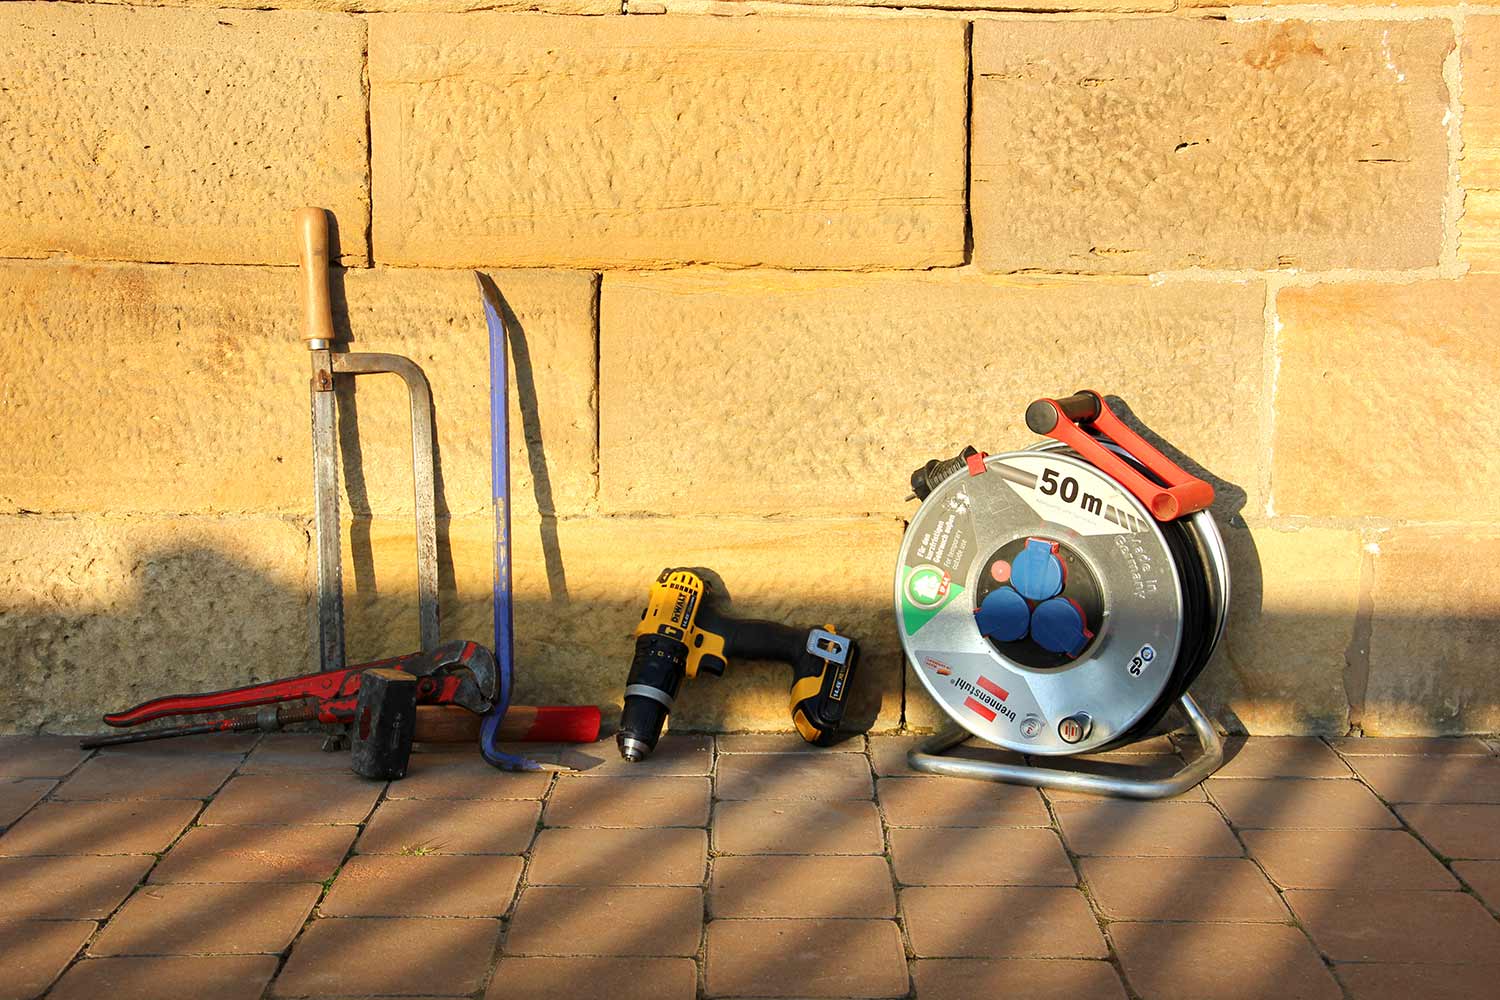 Foto: Verschiedene Bau-Werkzeuge lehnen an einer Mauer